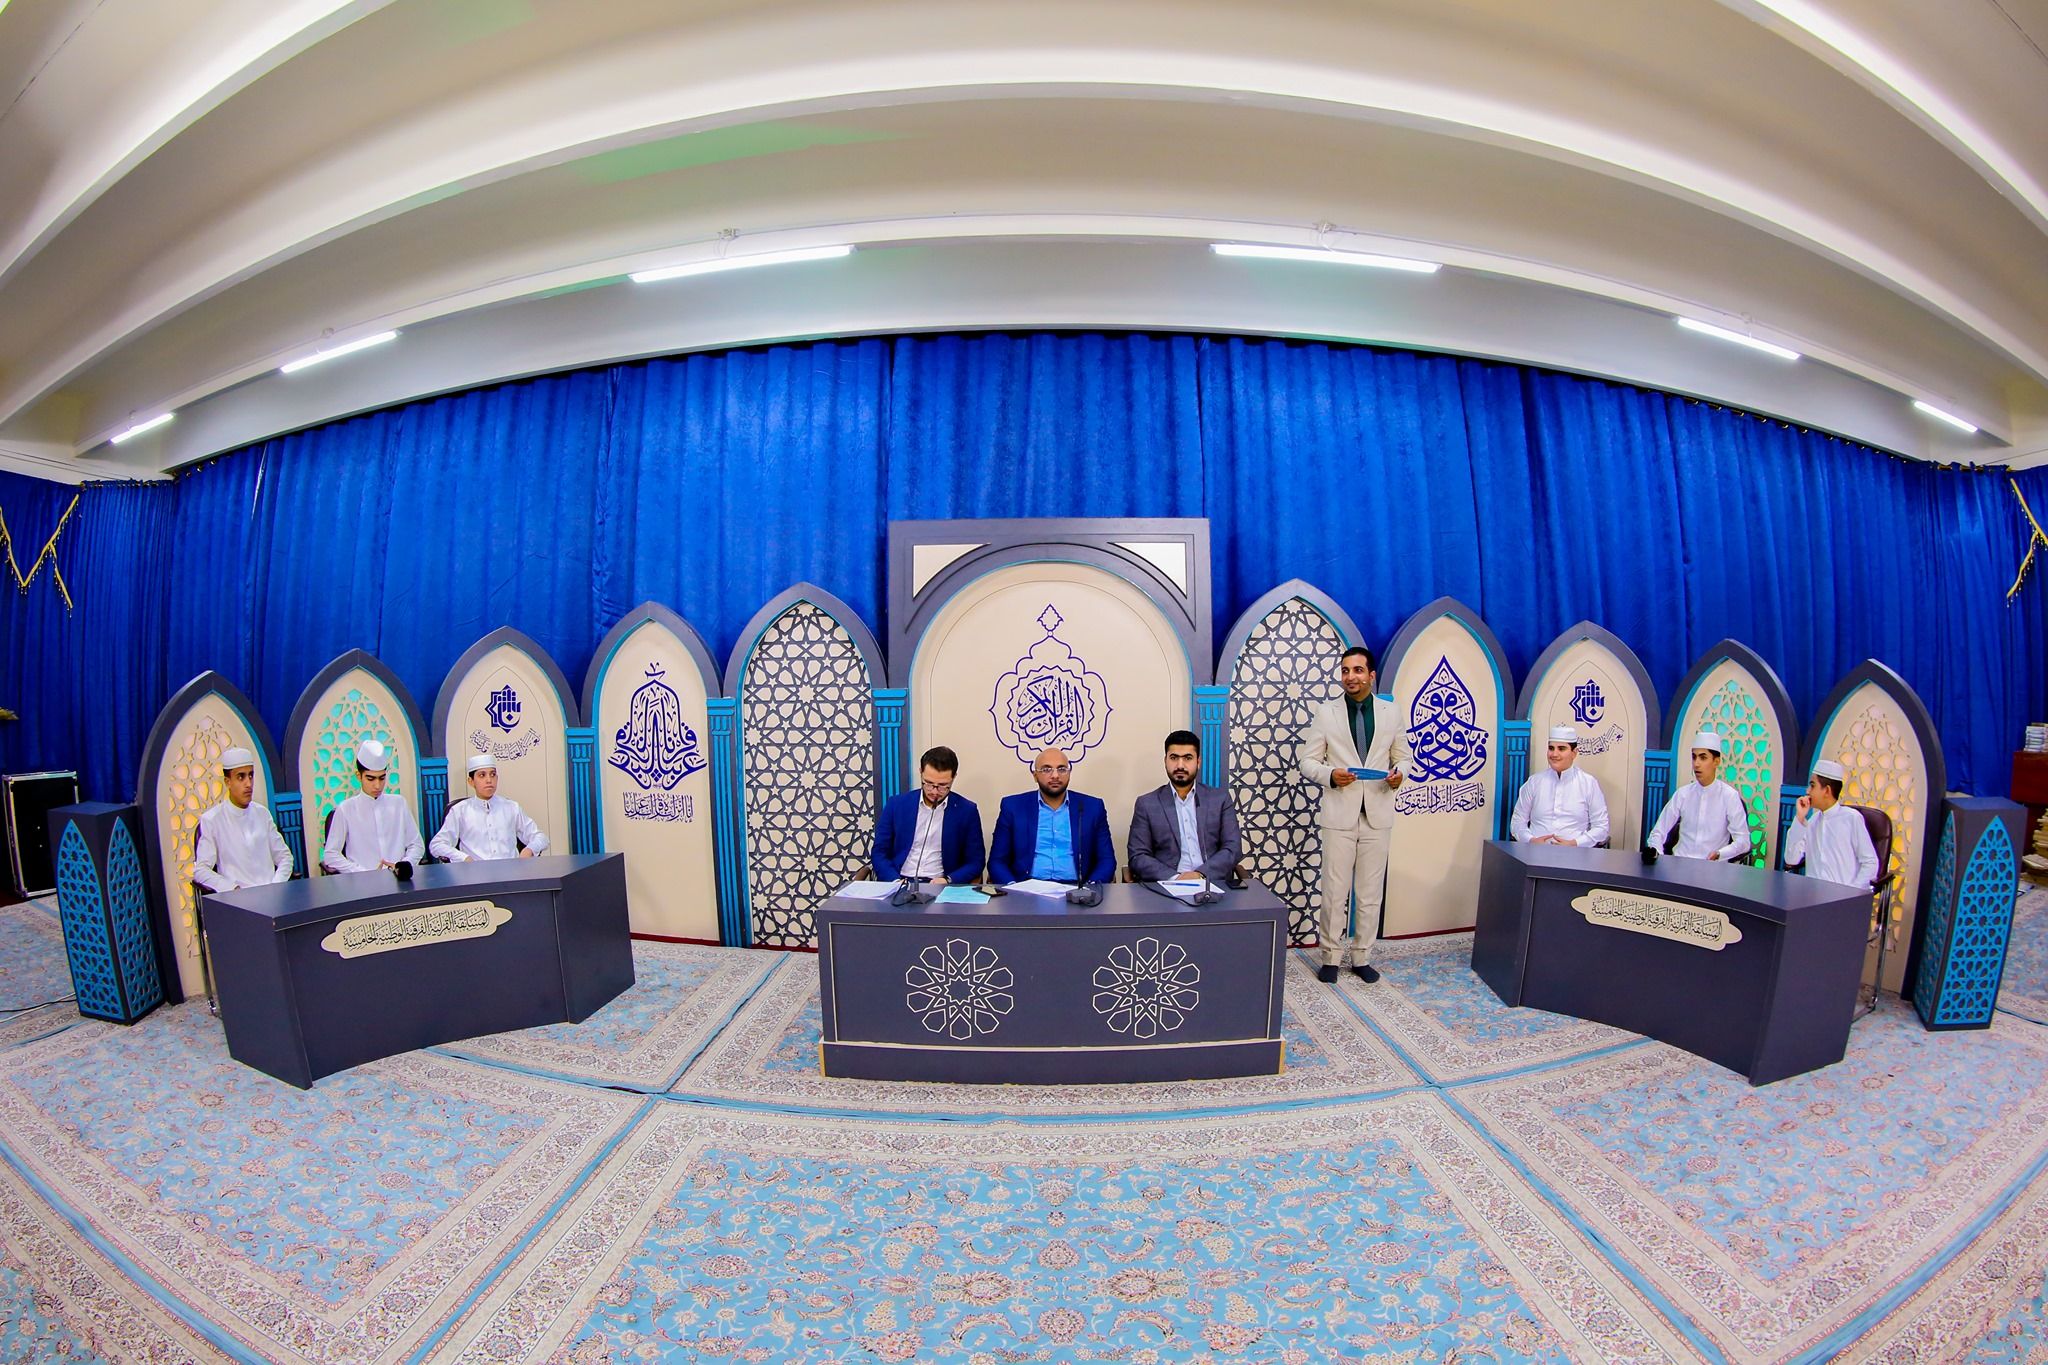 مركز المشاريع القرآنية يقيم مسابقة قرآنية فرقية خاصة بطلبة مشروع أمير القراء الوطني